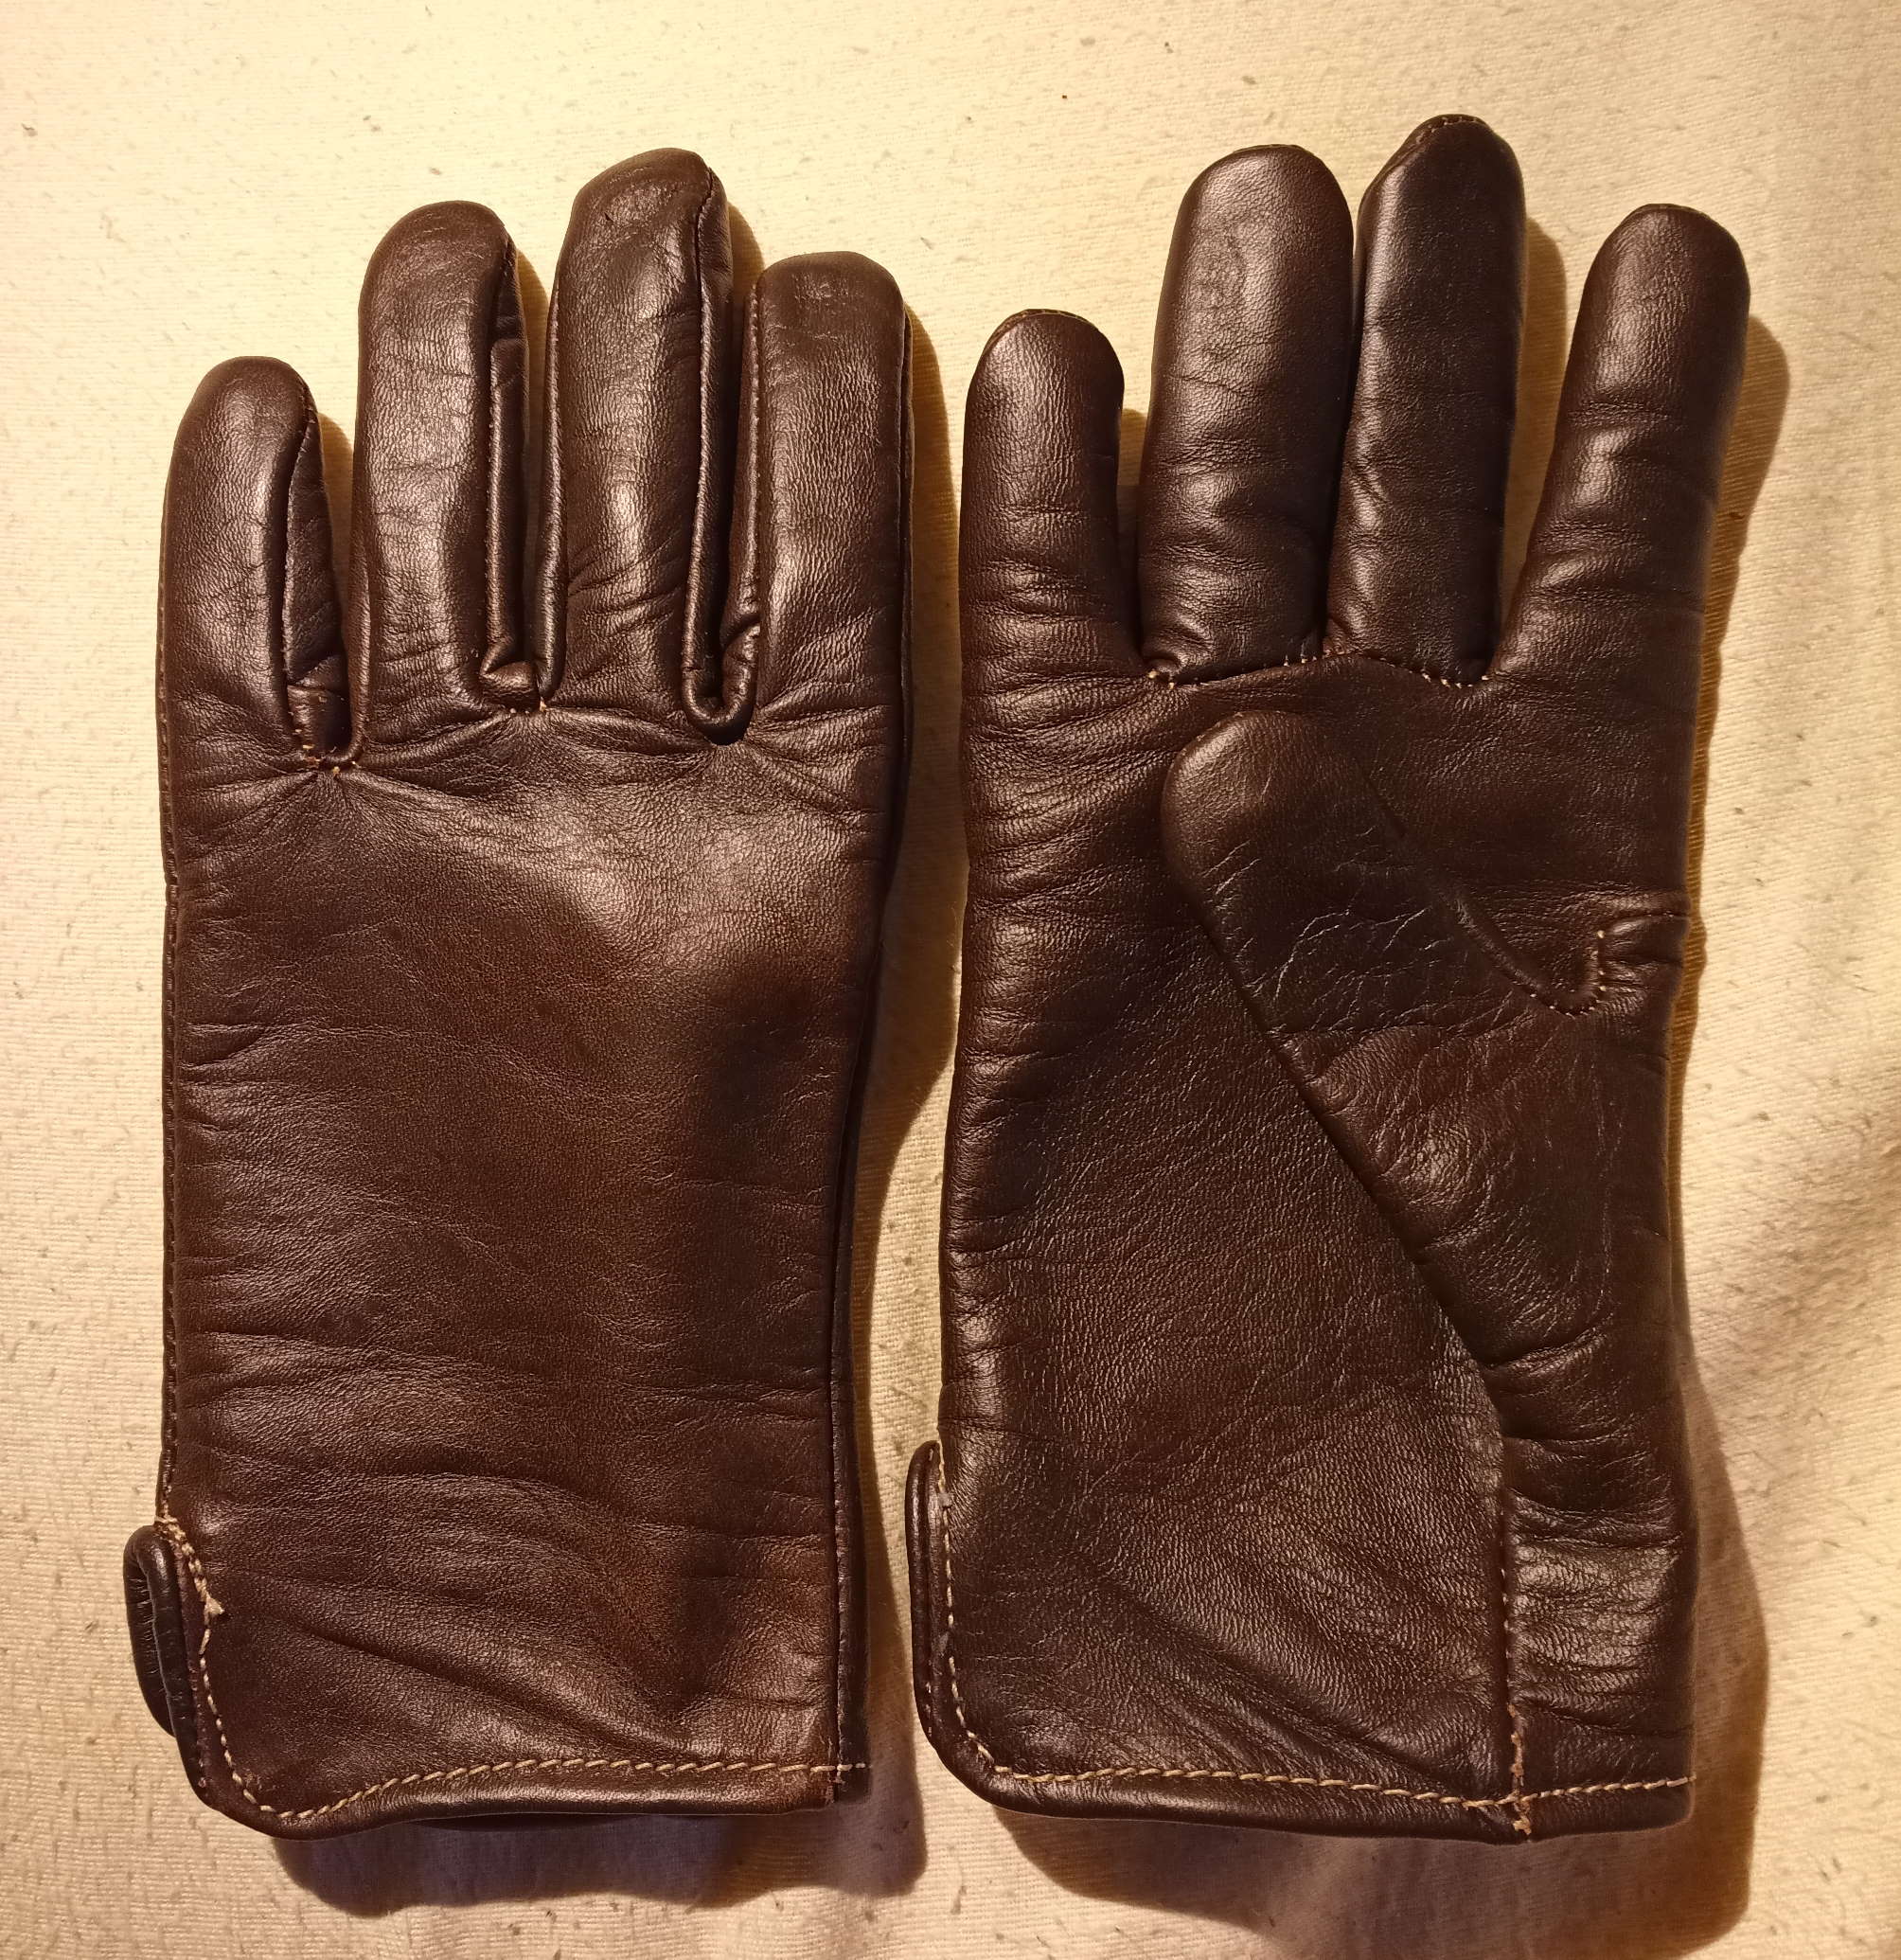 sullivan's gloves horween vermont.jpg